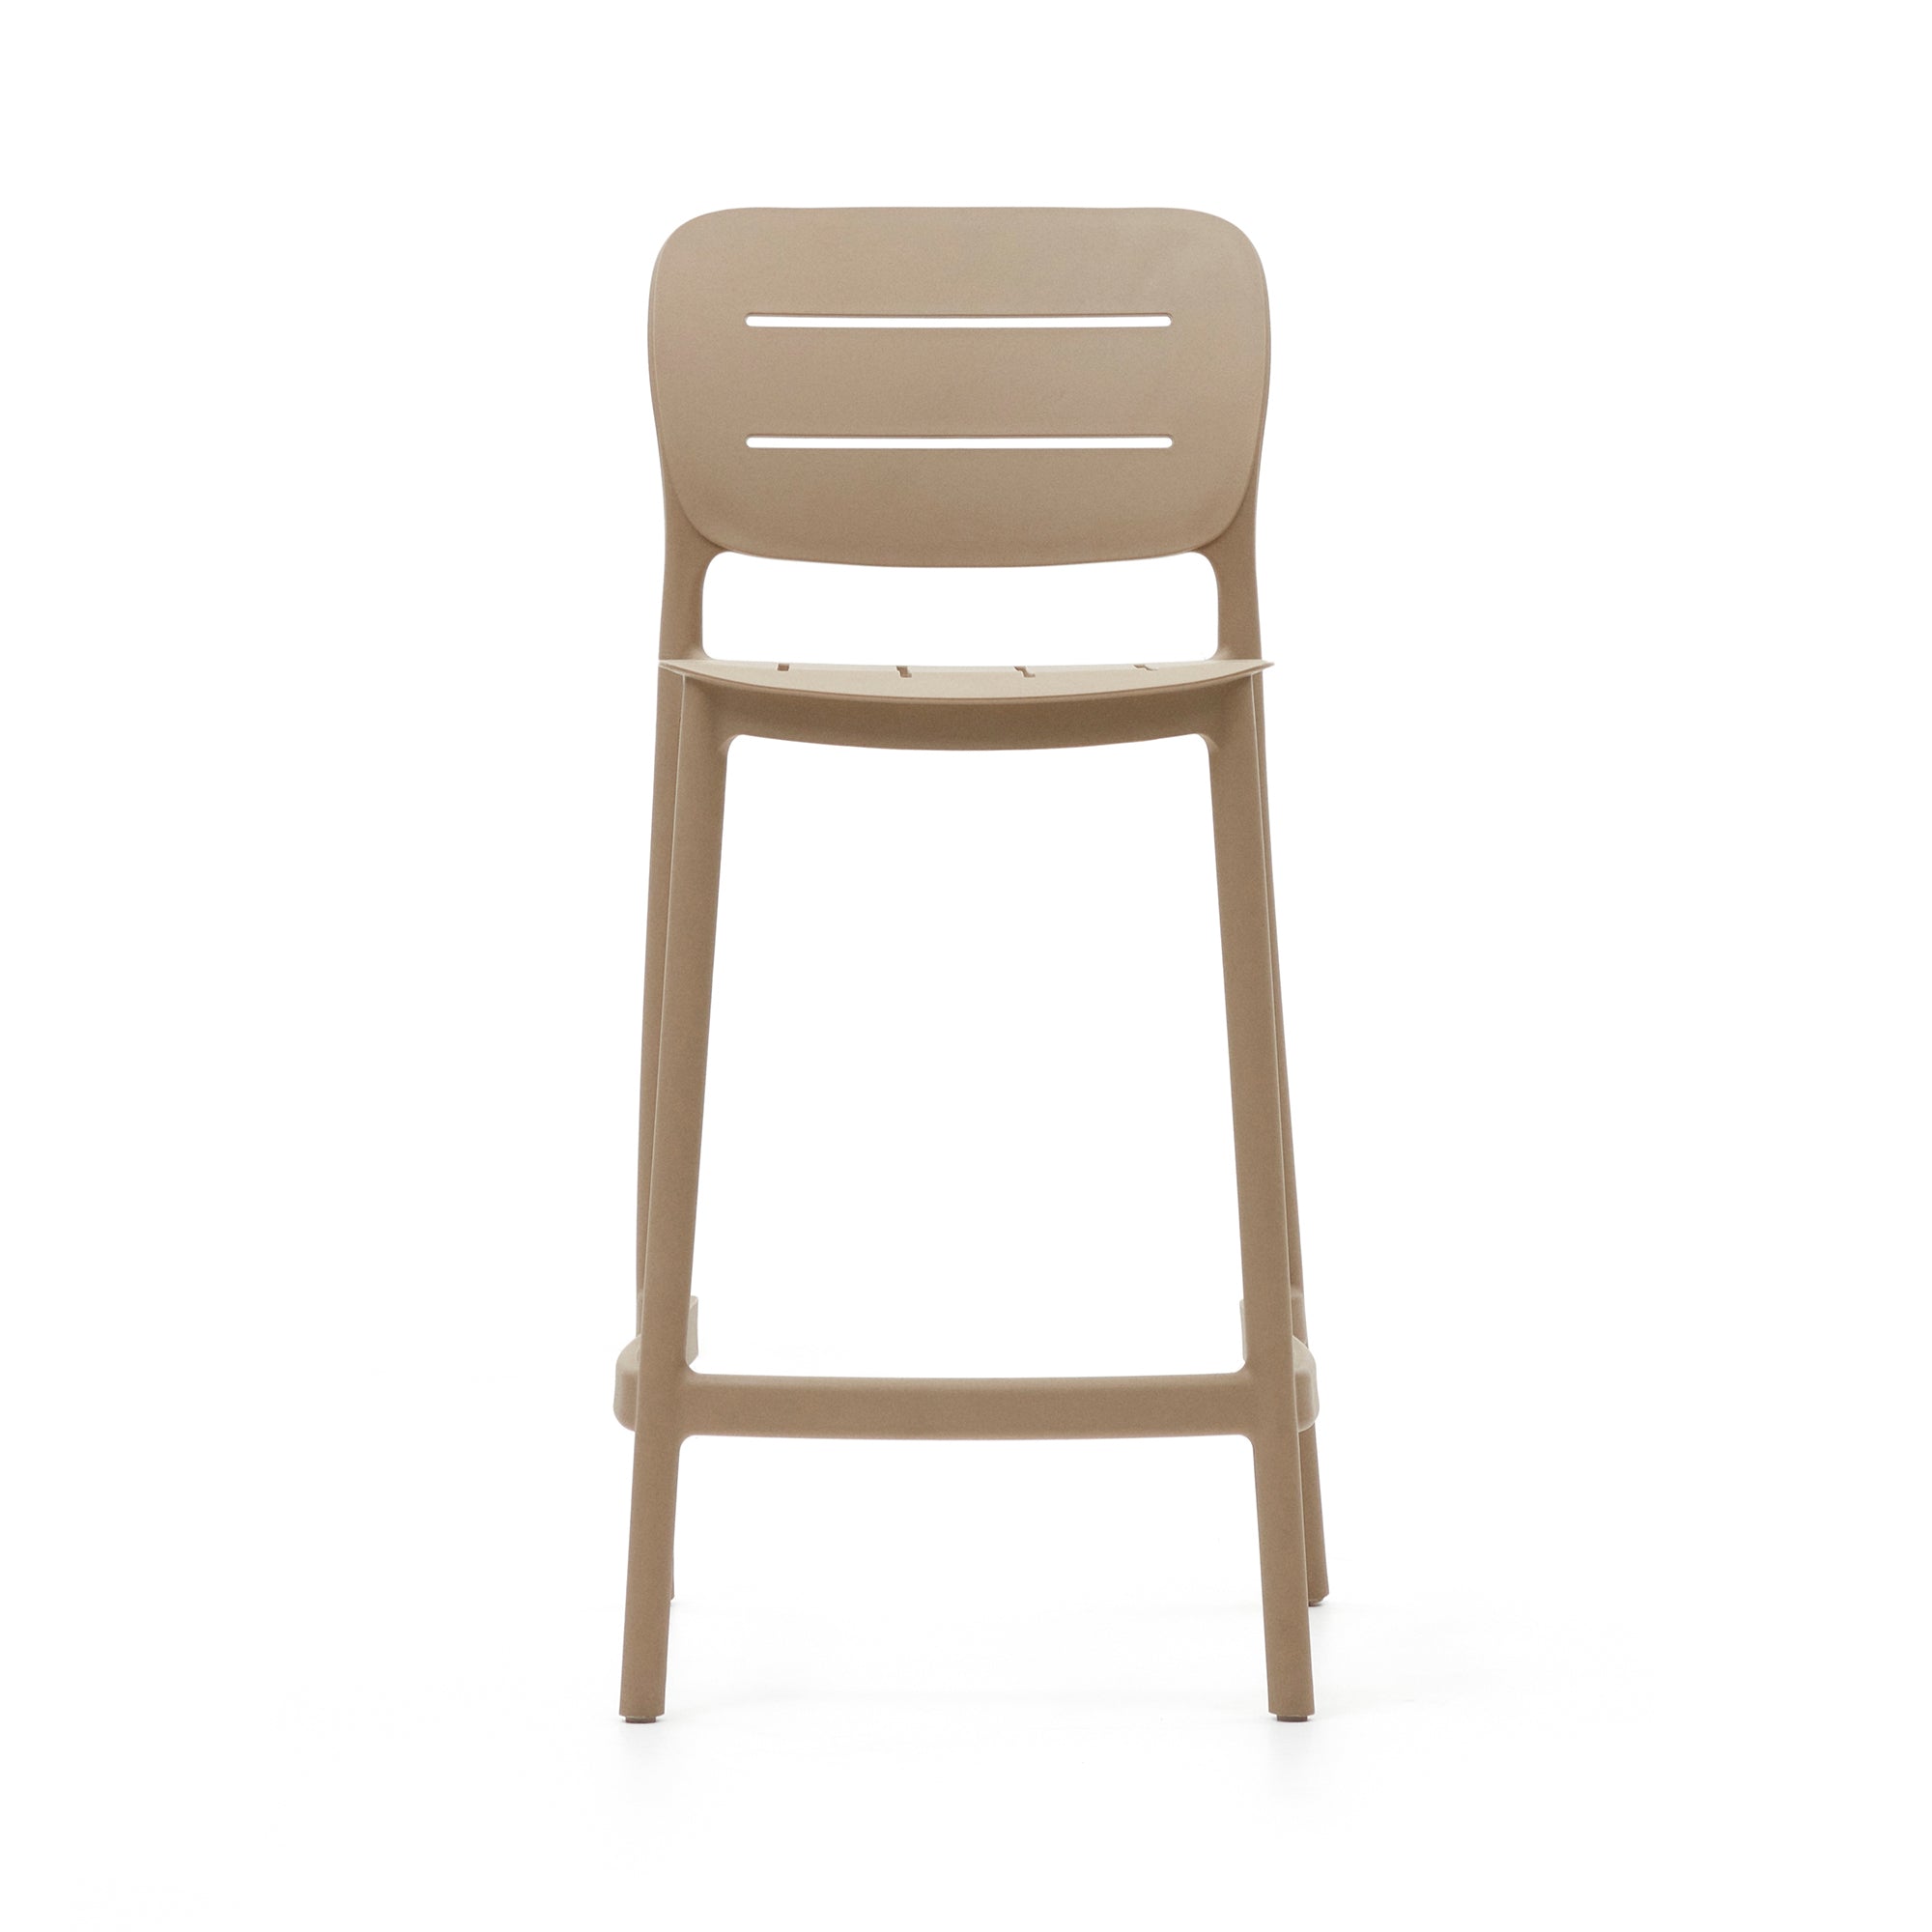 Morella egymásra rakható kültéri szék bézs színben, 65 cm magasságban